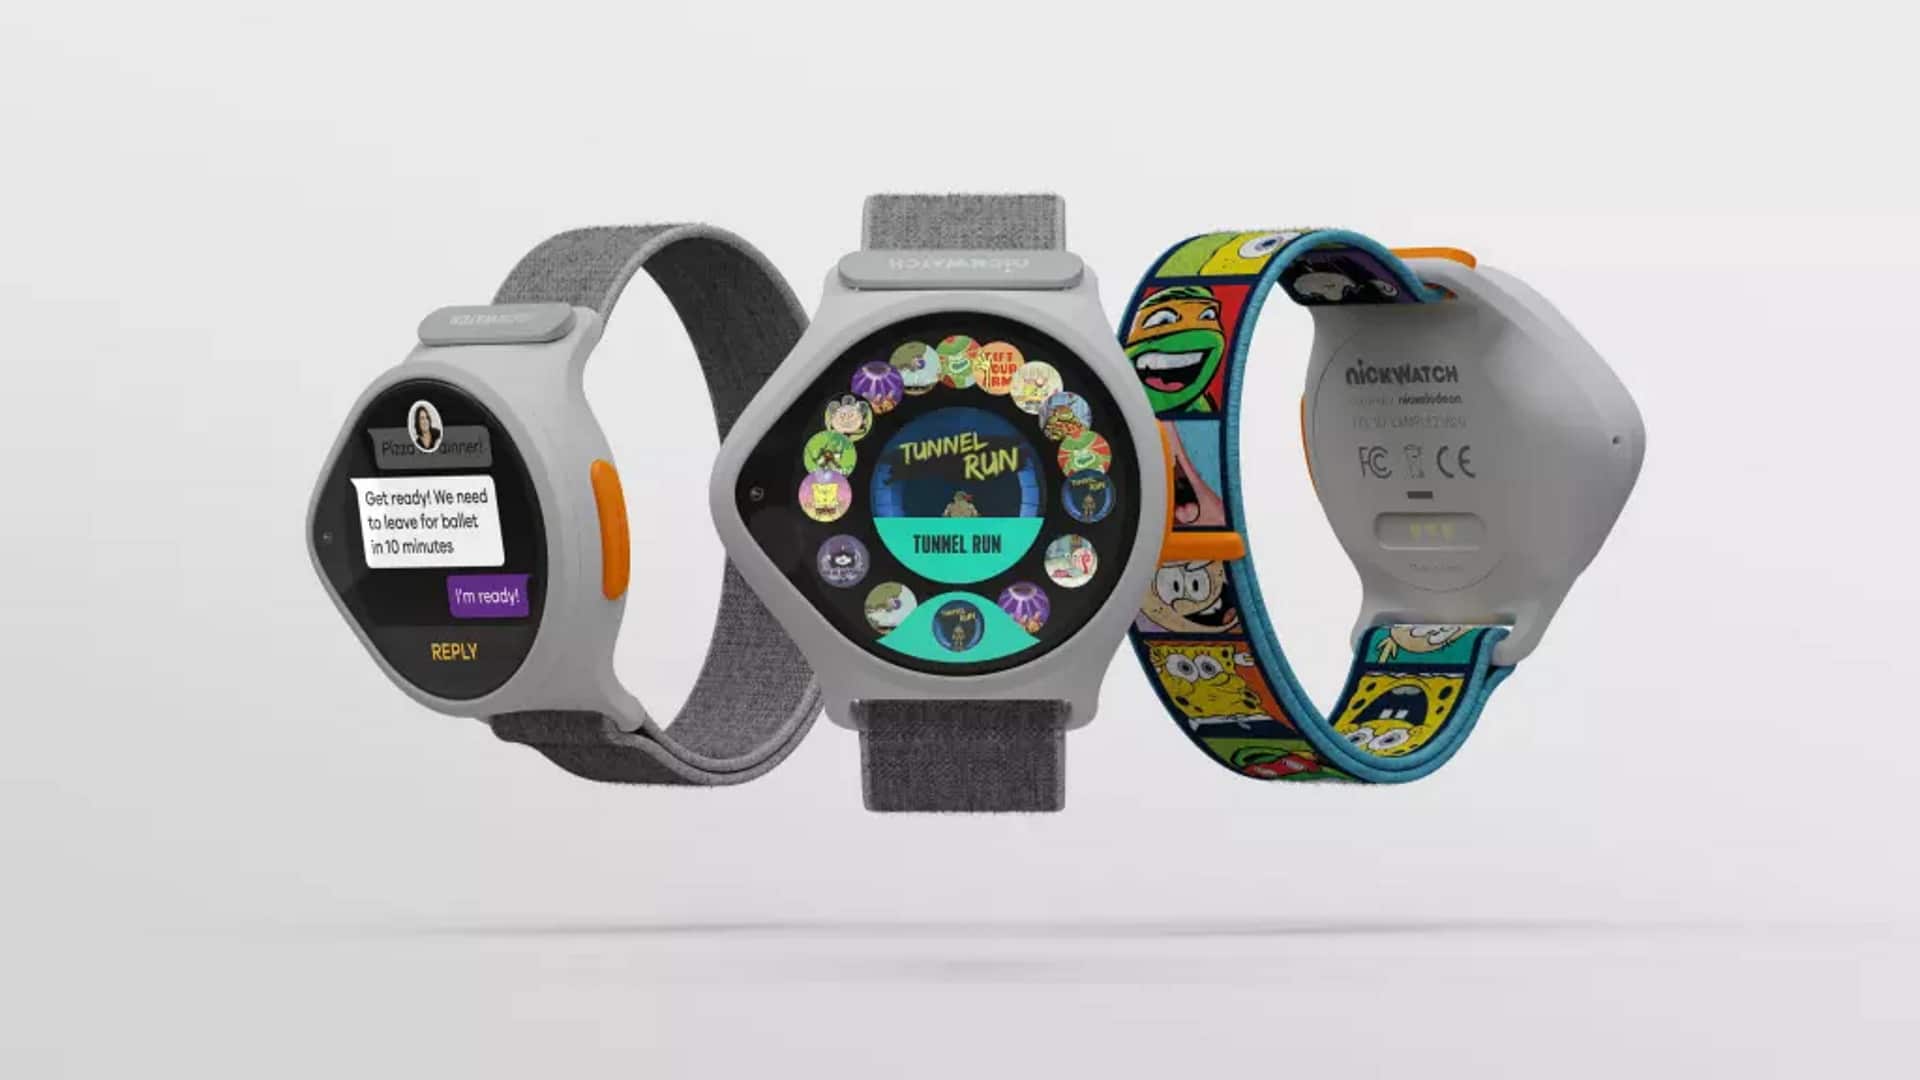 Imagem mostra primeiro smartwatch da Viacom, que terá conteúdo do canal Nickelodeon na tela